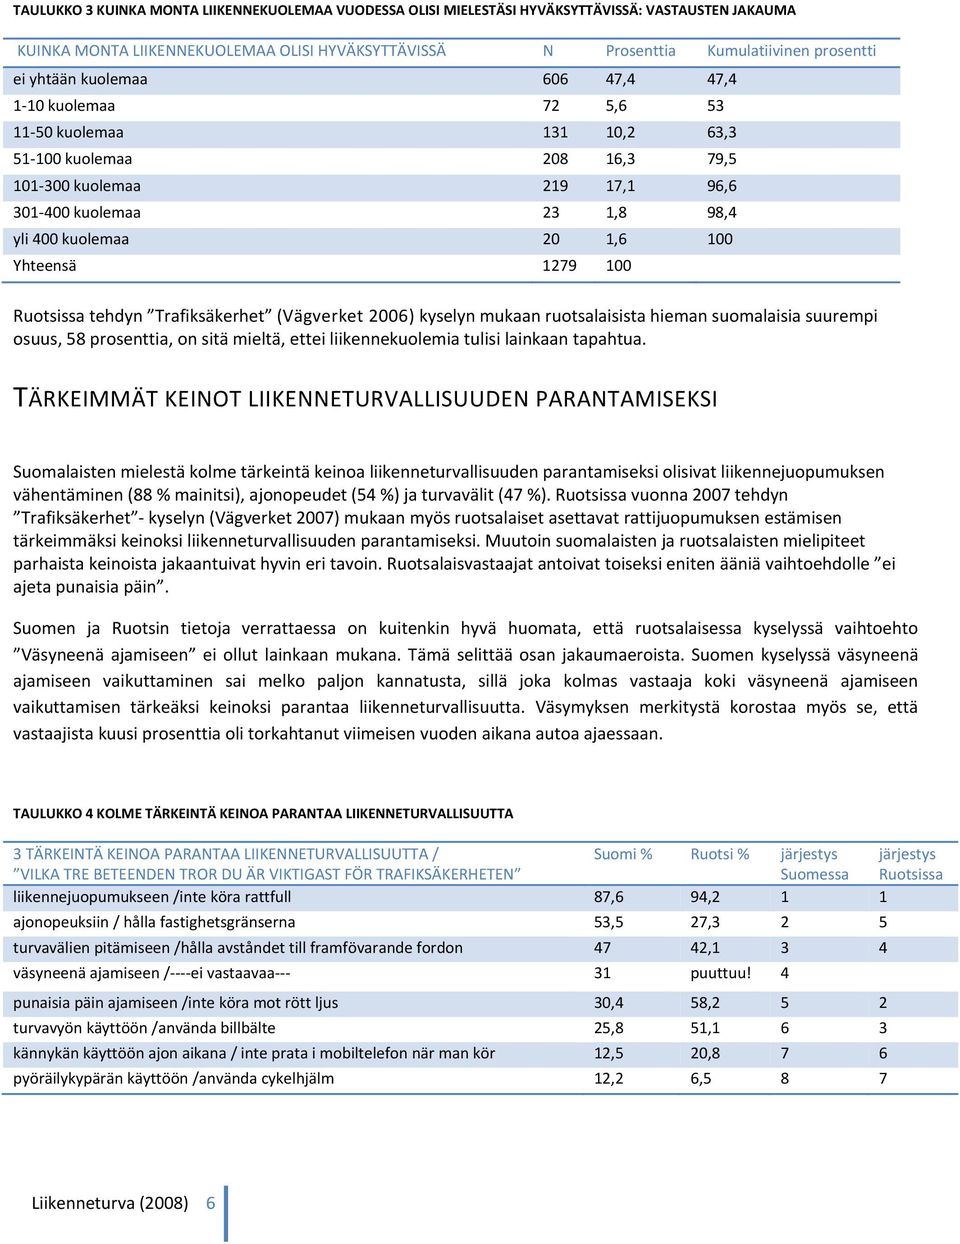 100 Ruotsissa tehdyn Trafiksäkerhet (Vägverket 2006) kyselyn mukaan ruotsalaisista hieman suomalaisia suurempi osuus, 58 prosenttia, on sitä mieltä, ettei liikennekuolemia tulisi lainkaan tapahtua.